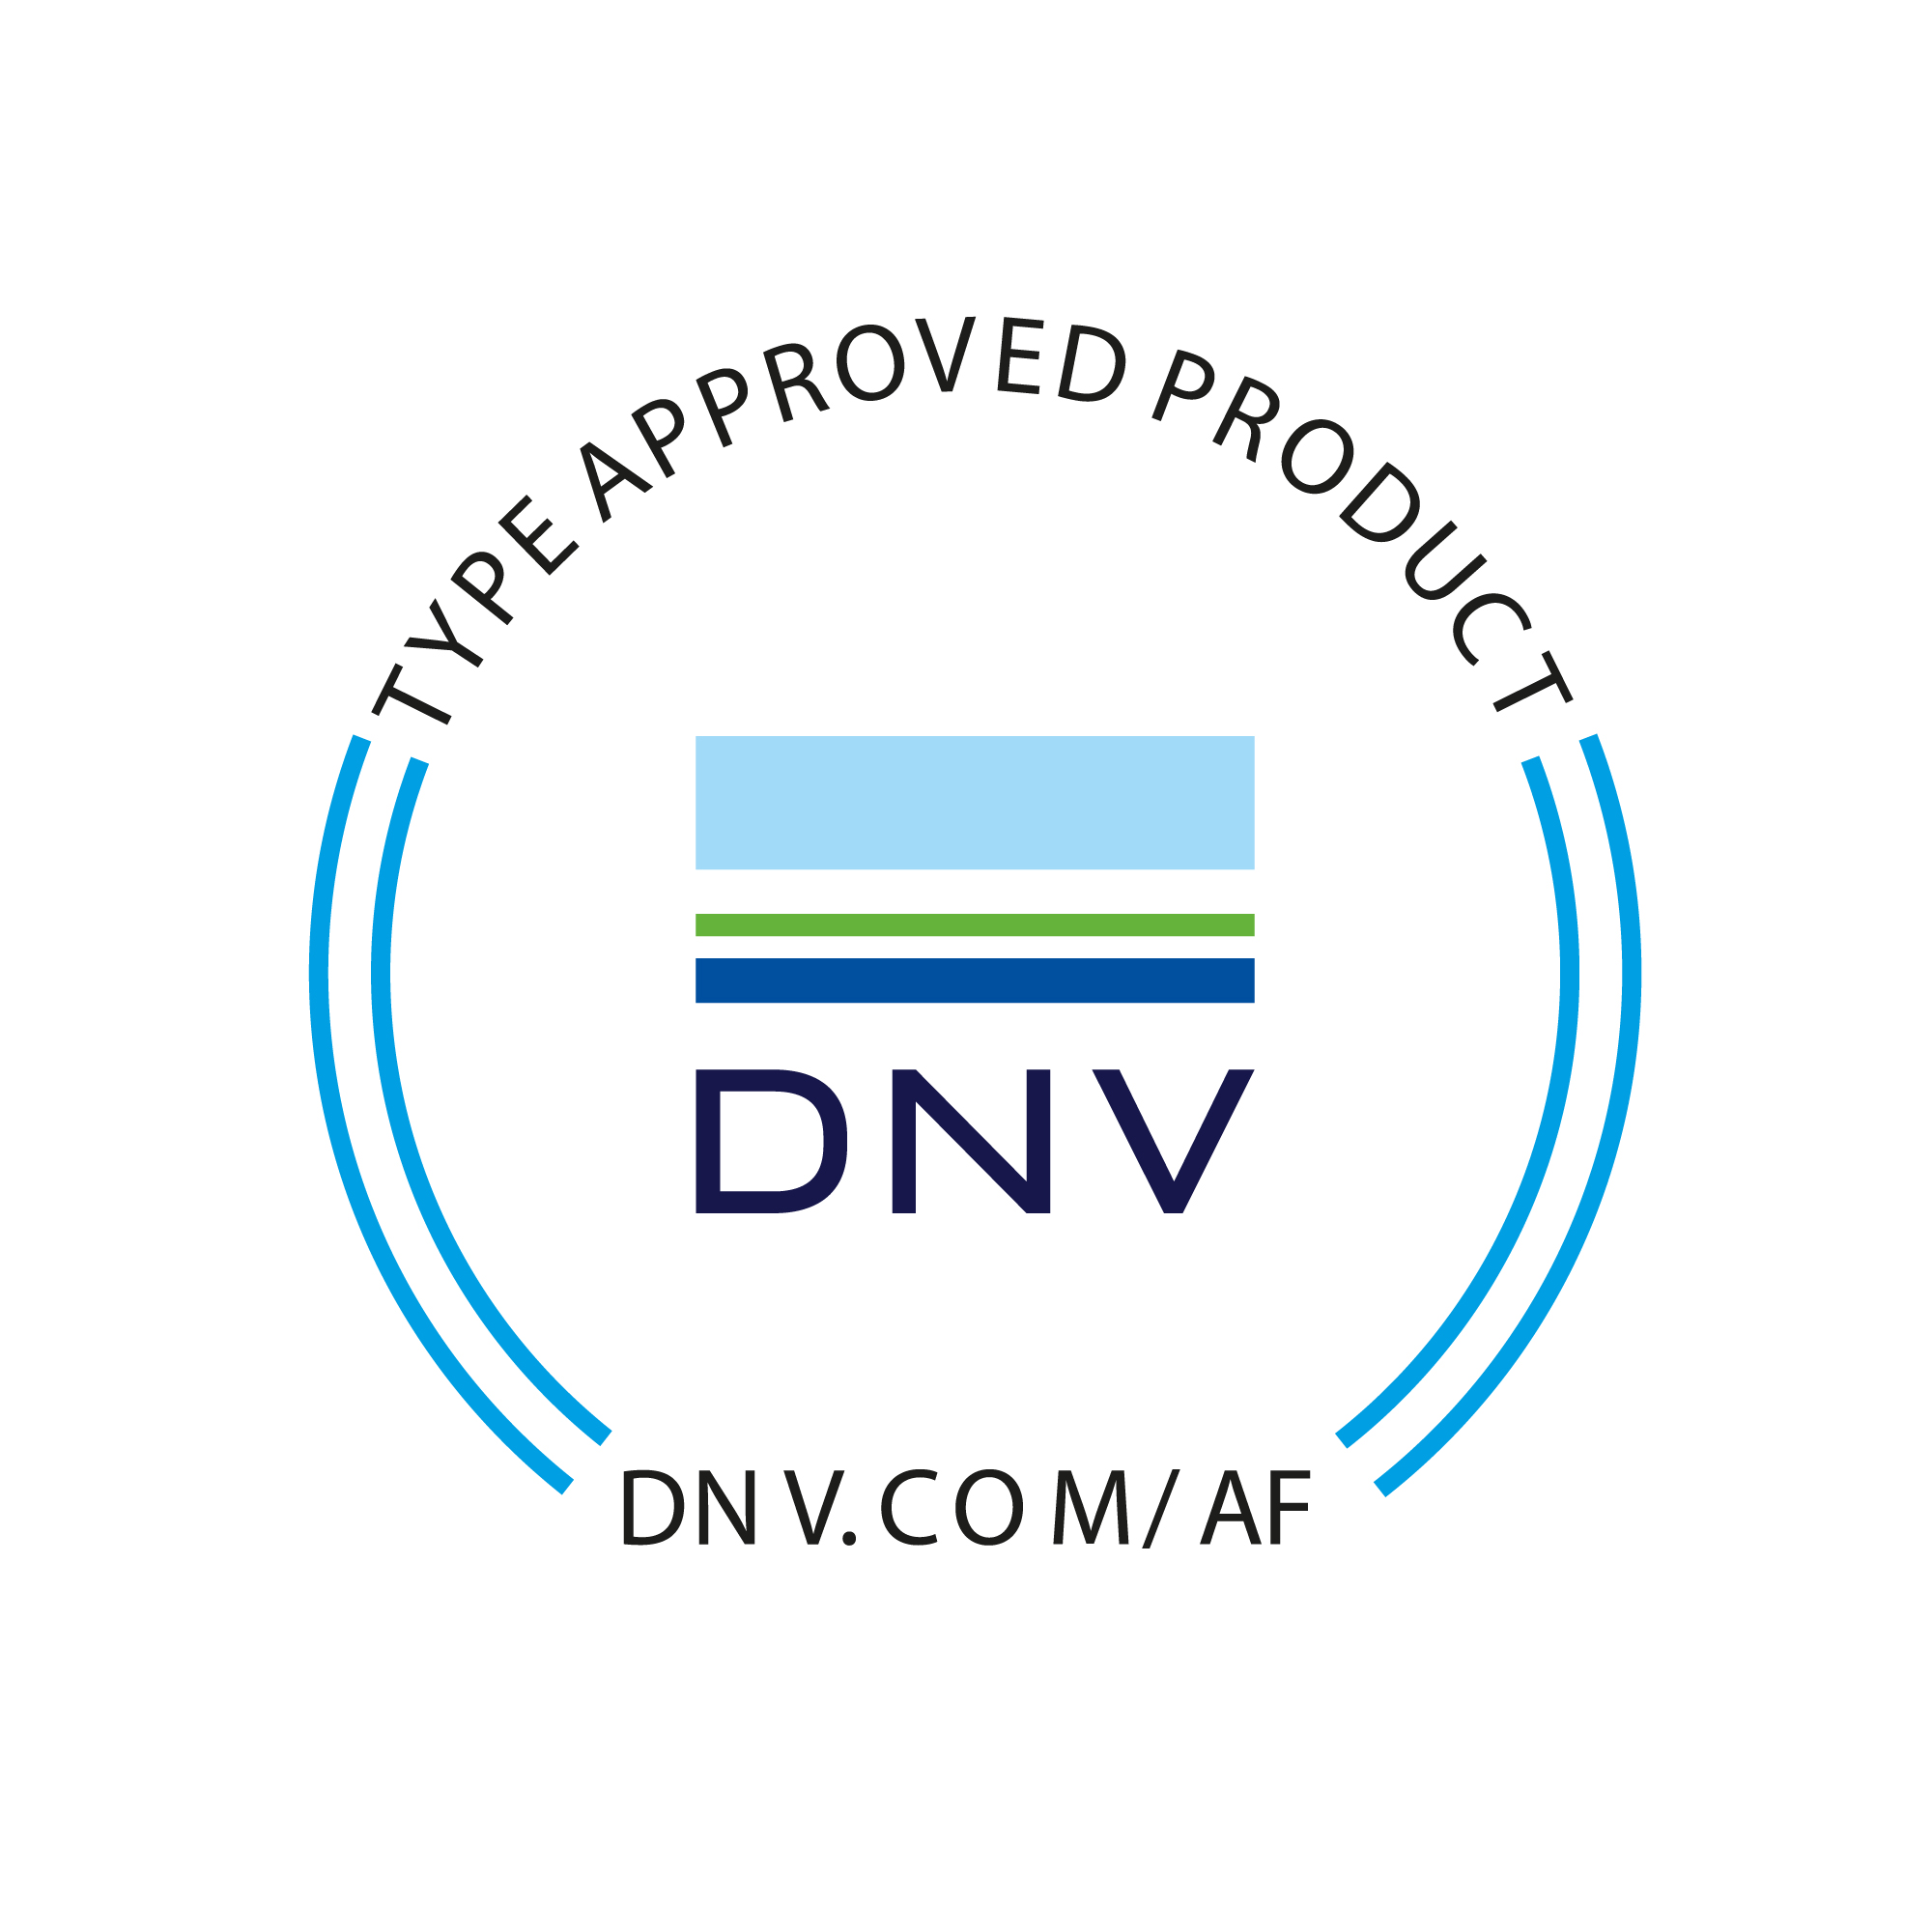 Das Bild zeigt das Logo der Schiffbauklassifikationsgesellschaft DNV